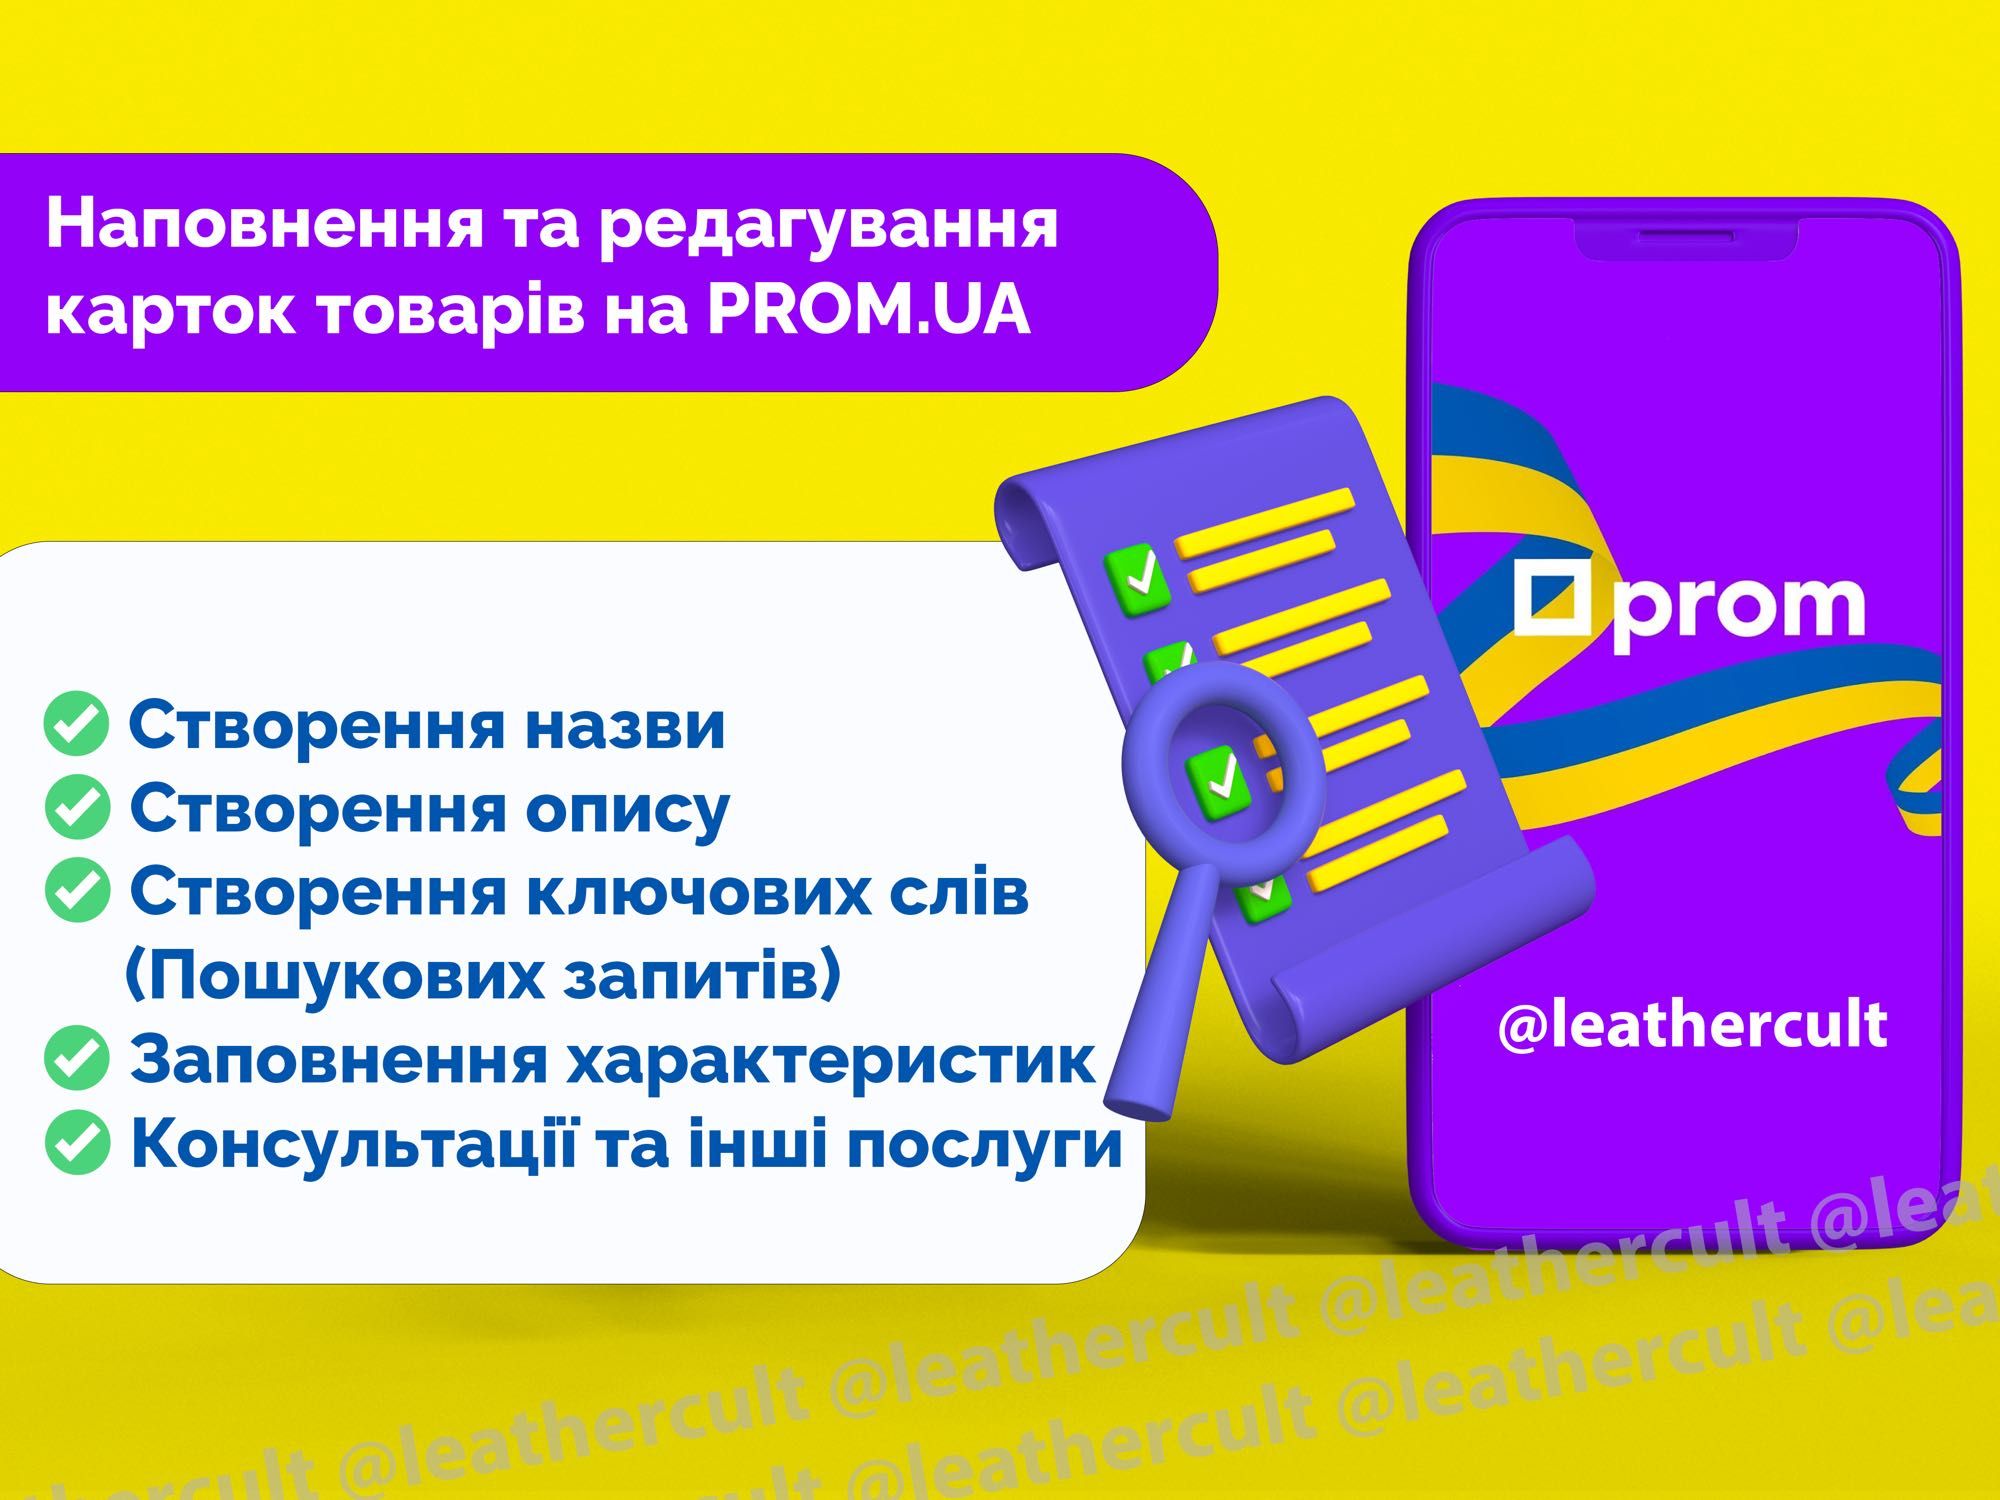 Додавання товару на Prom.ua та редагування карток товару, наповнення